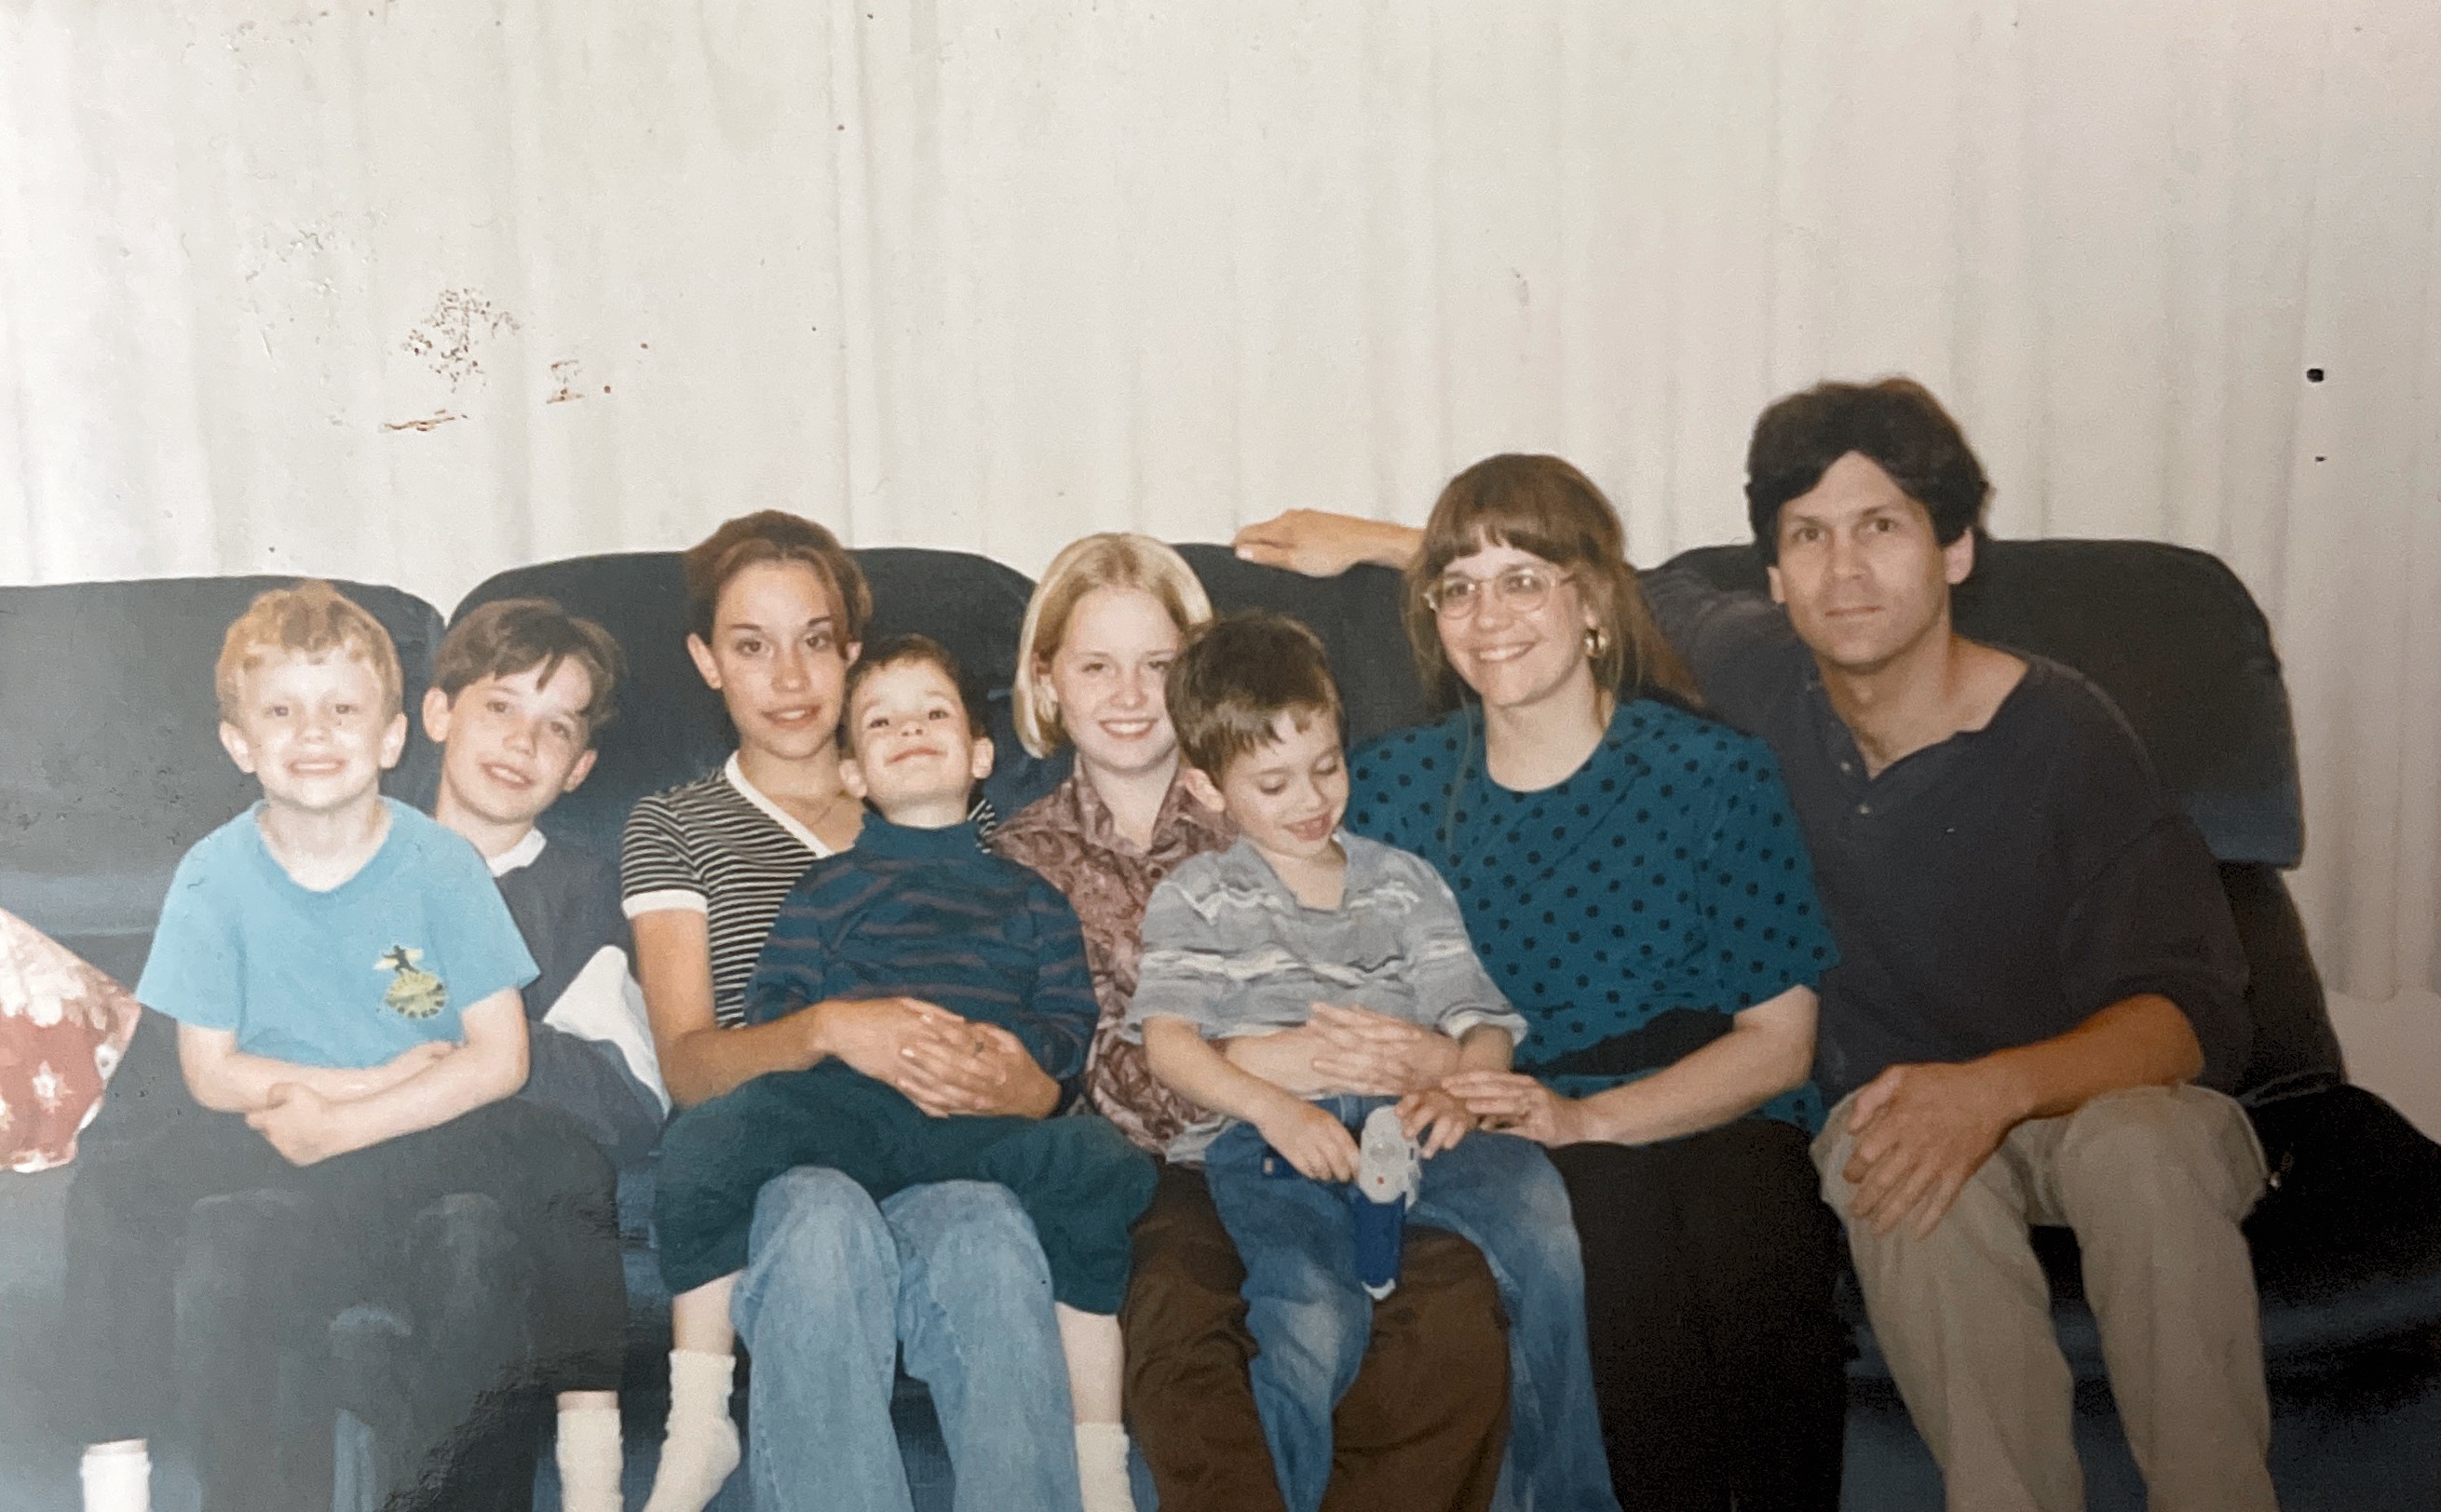 One of our first family photos around 1997 at 82 Hylebos Ave Milton WA